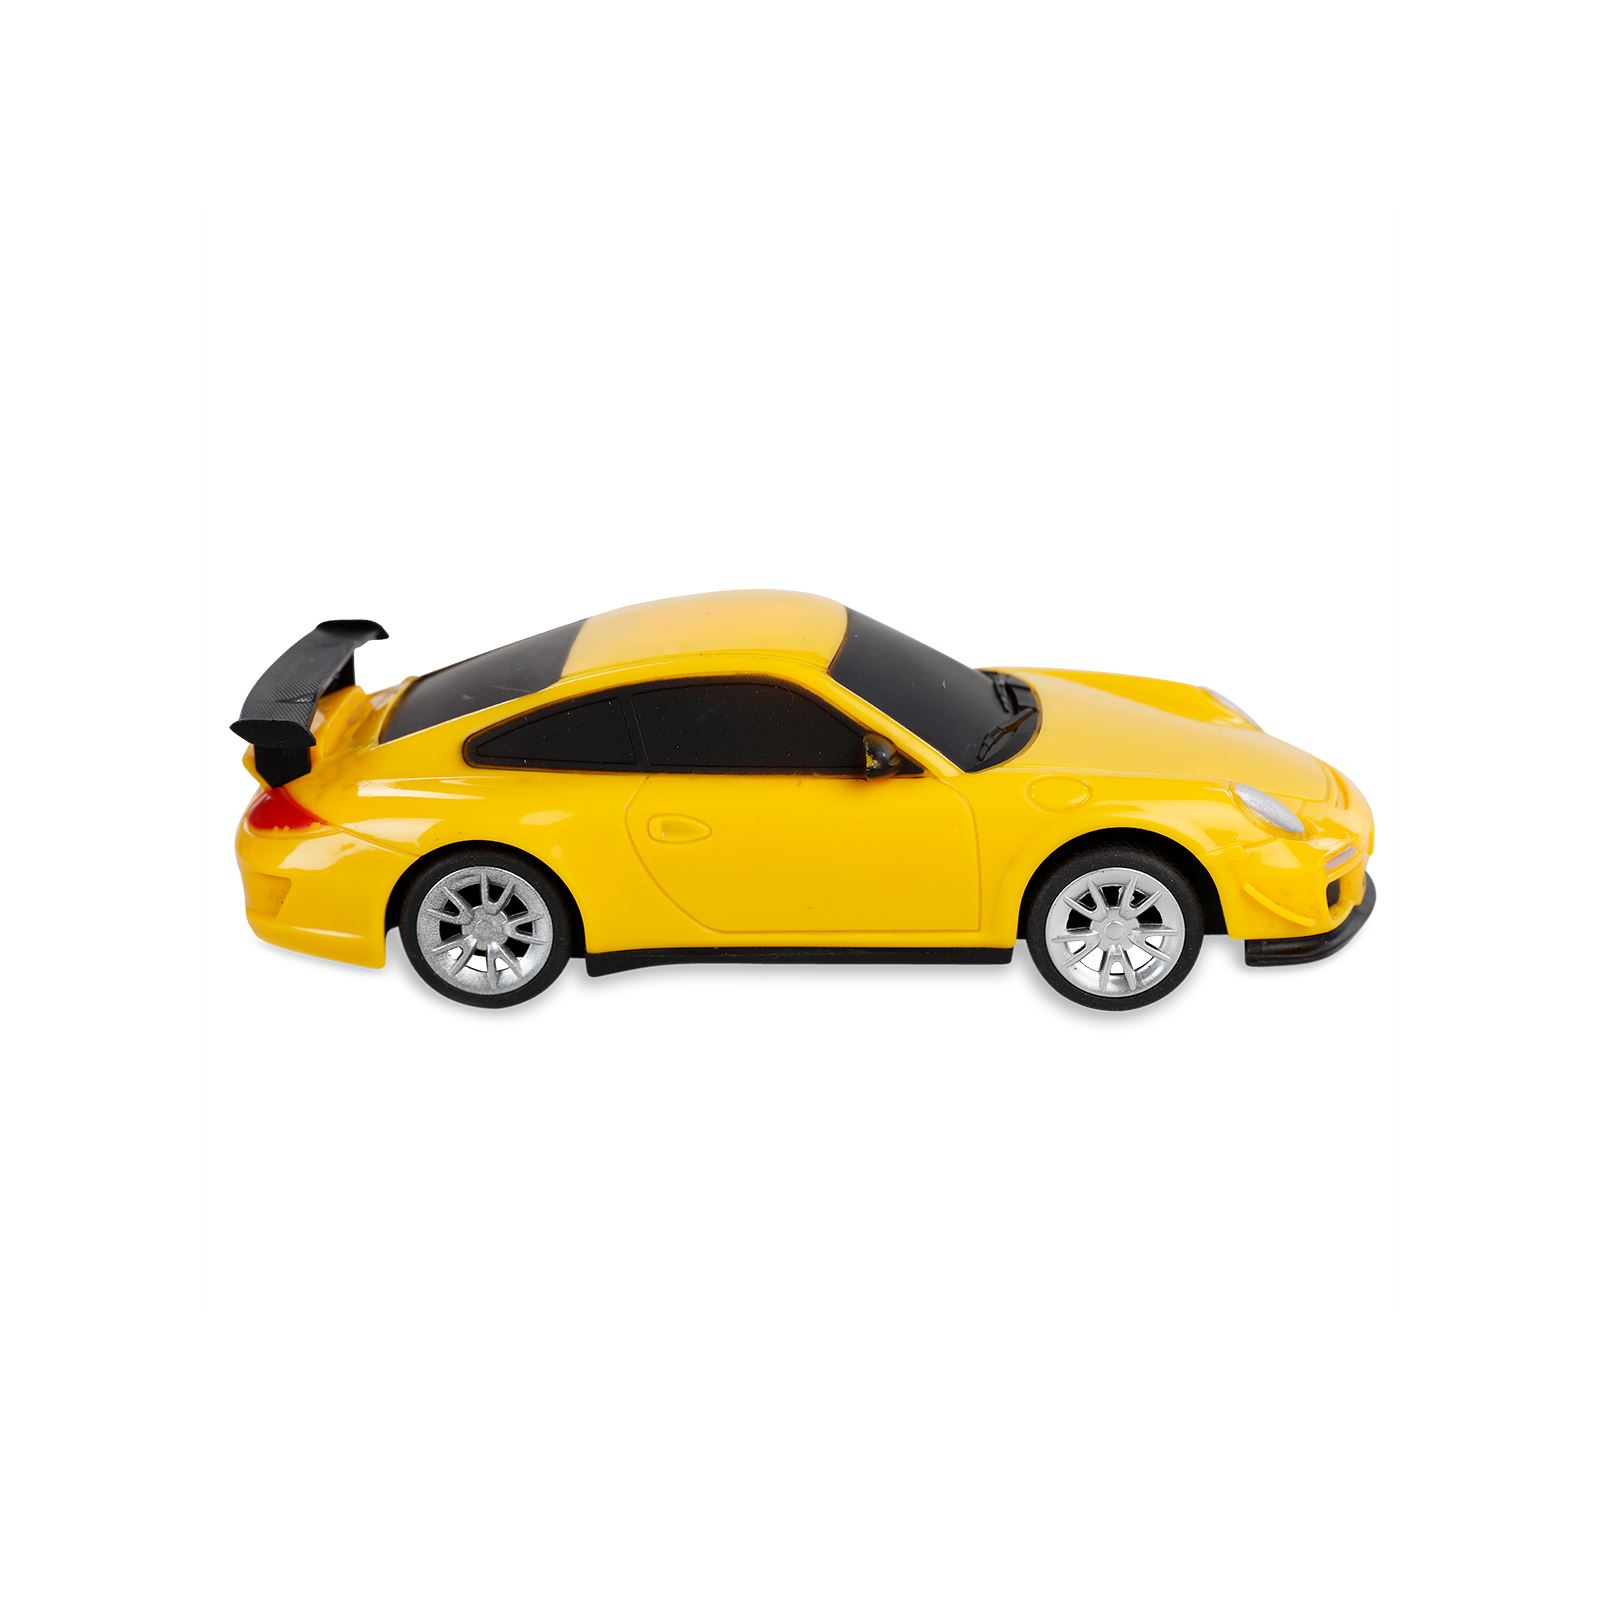 Prestij Oyuncak Pilli Jip Oyuncak Araba Sarı